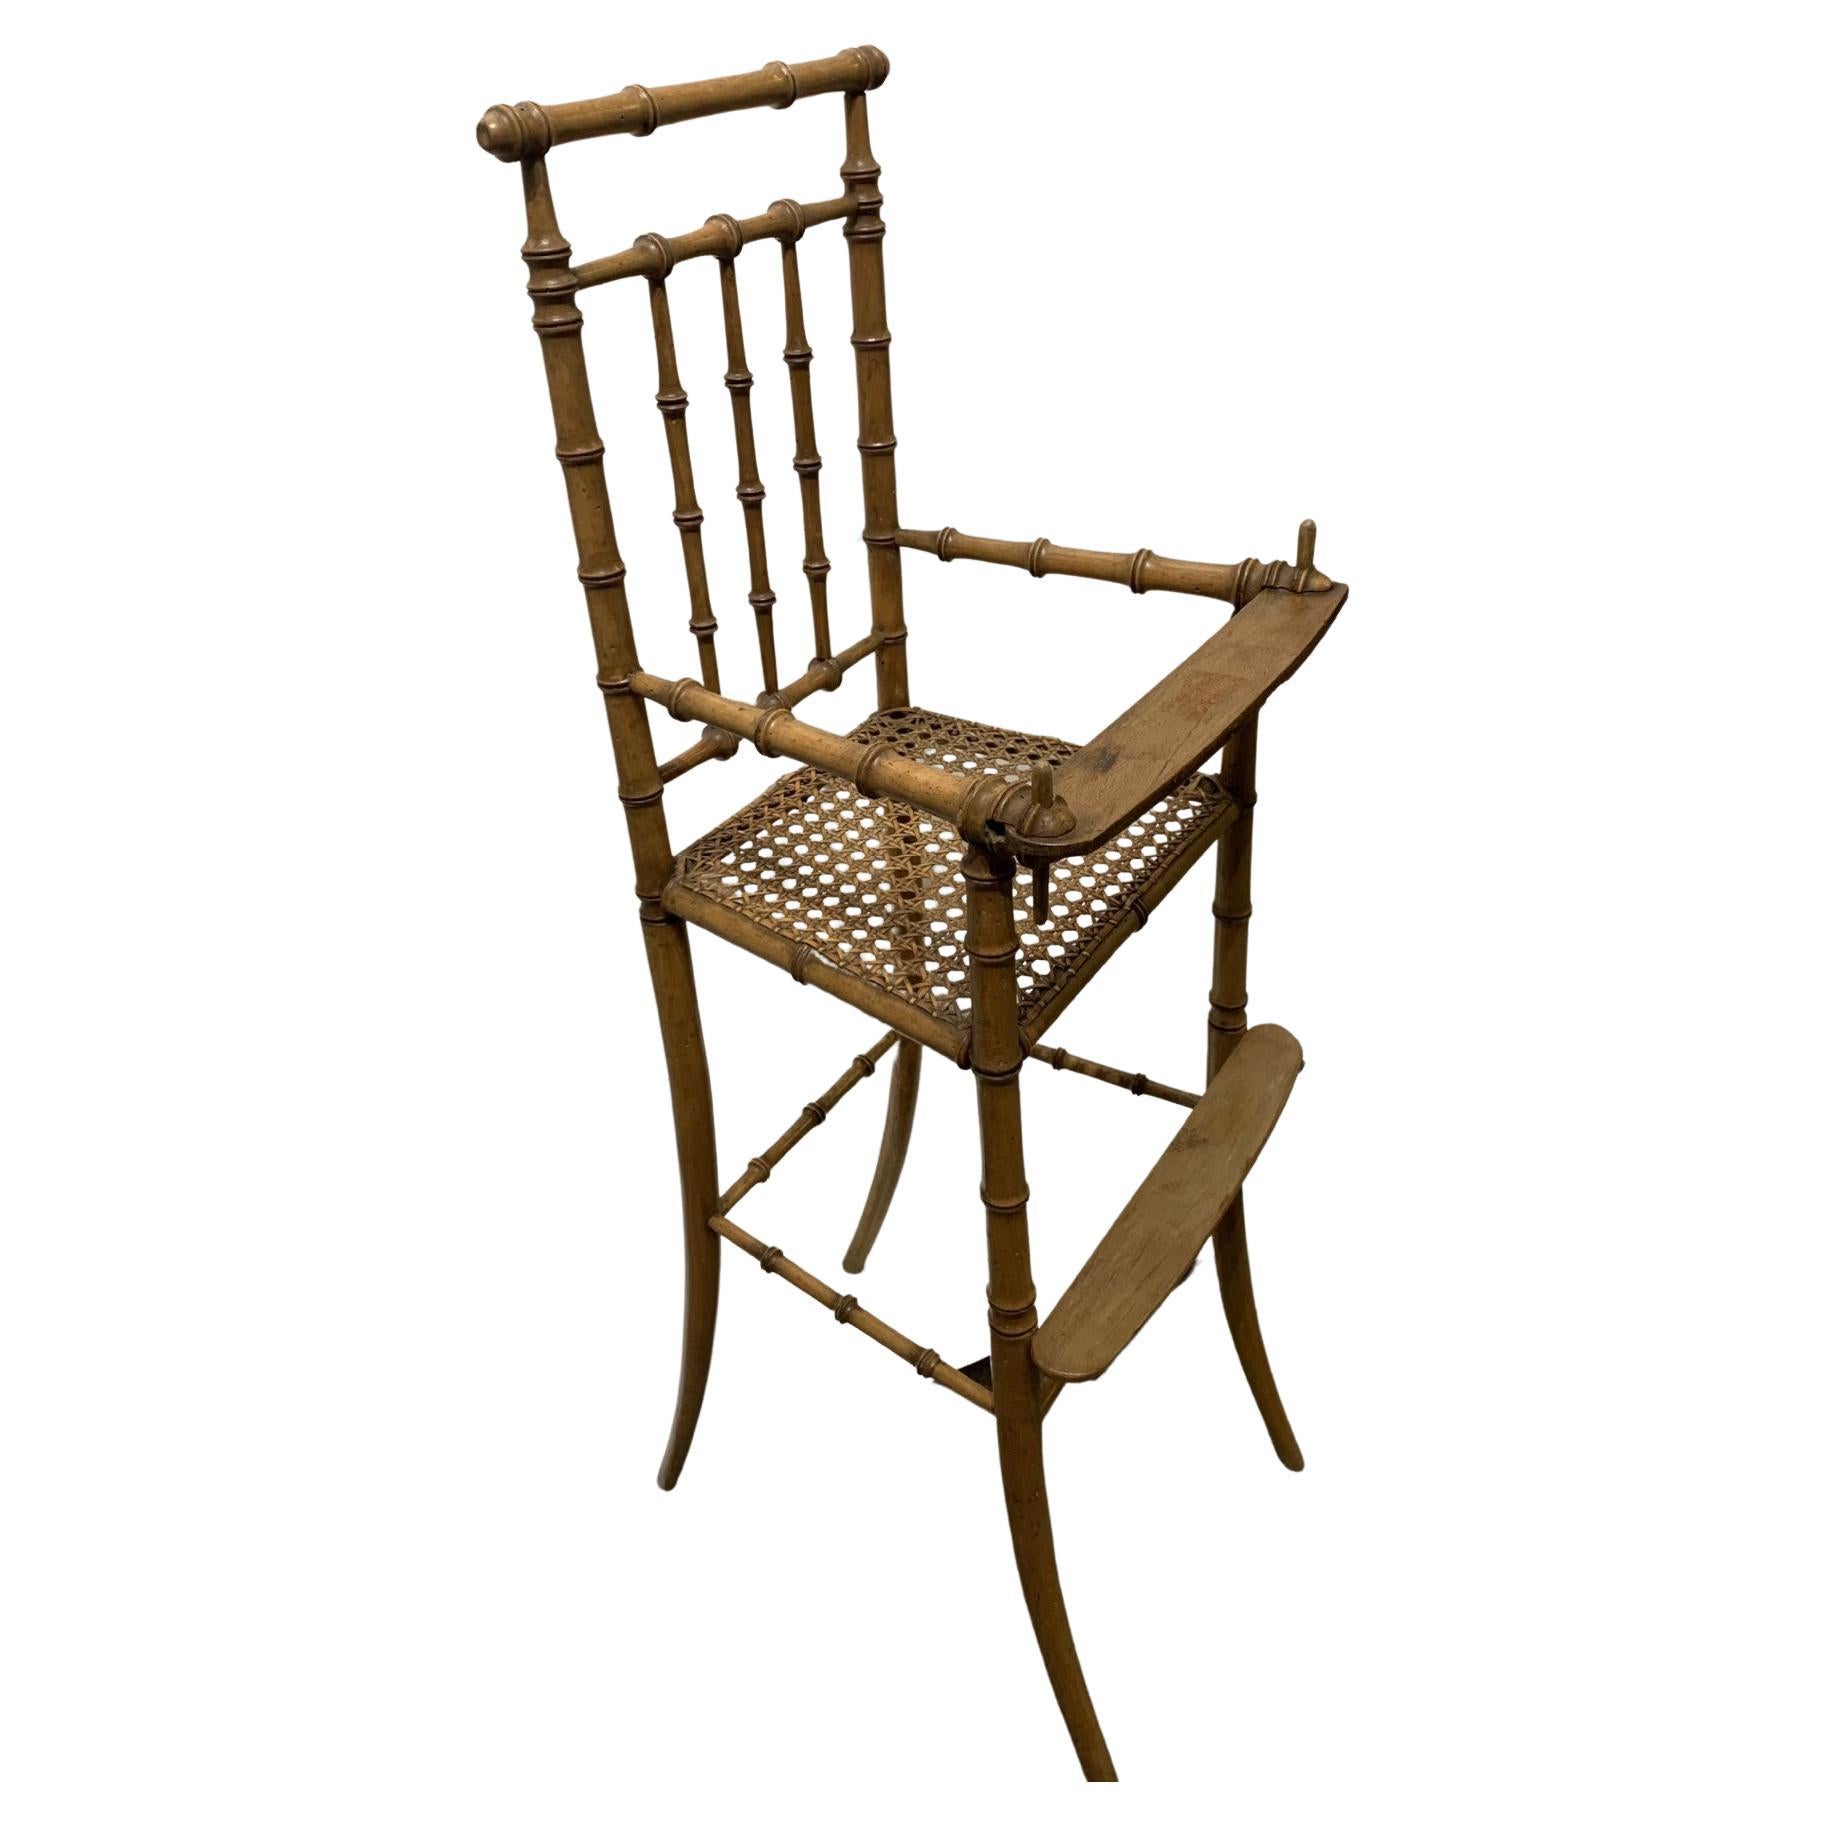 Test - Faux Bamboo Children’s High Chair, circa 1890